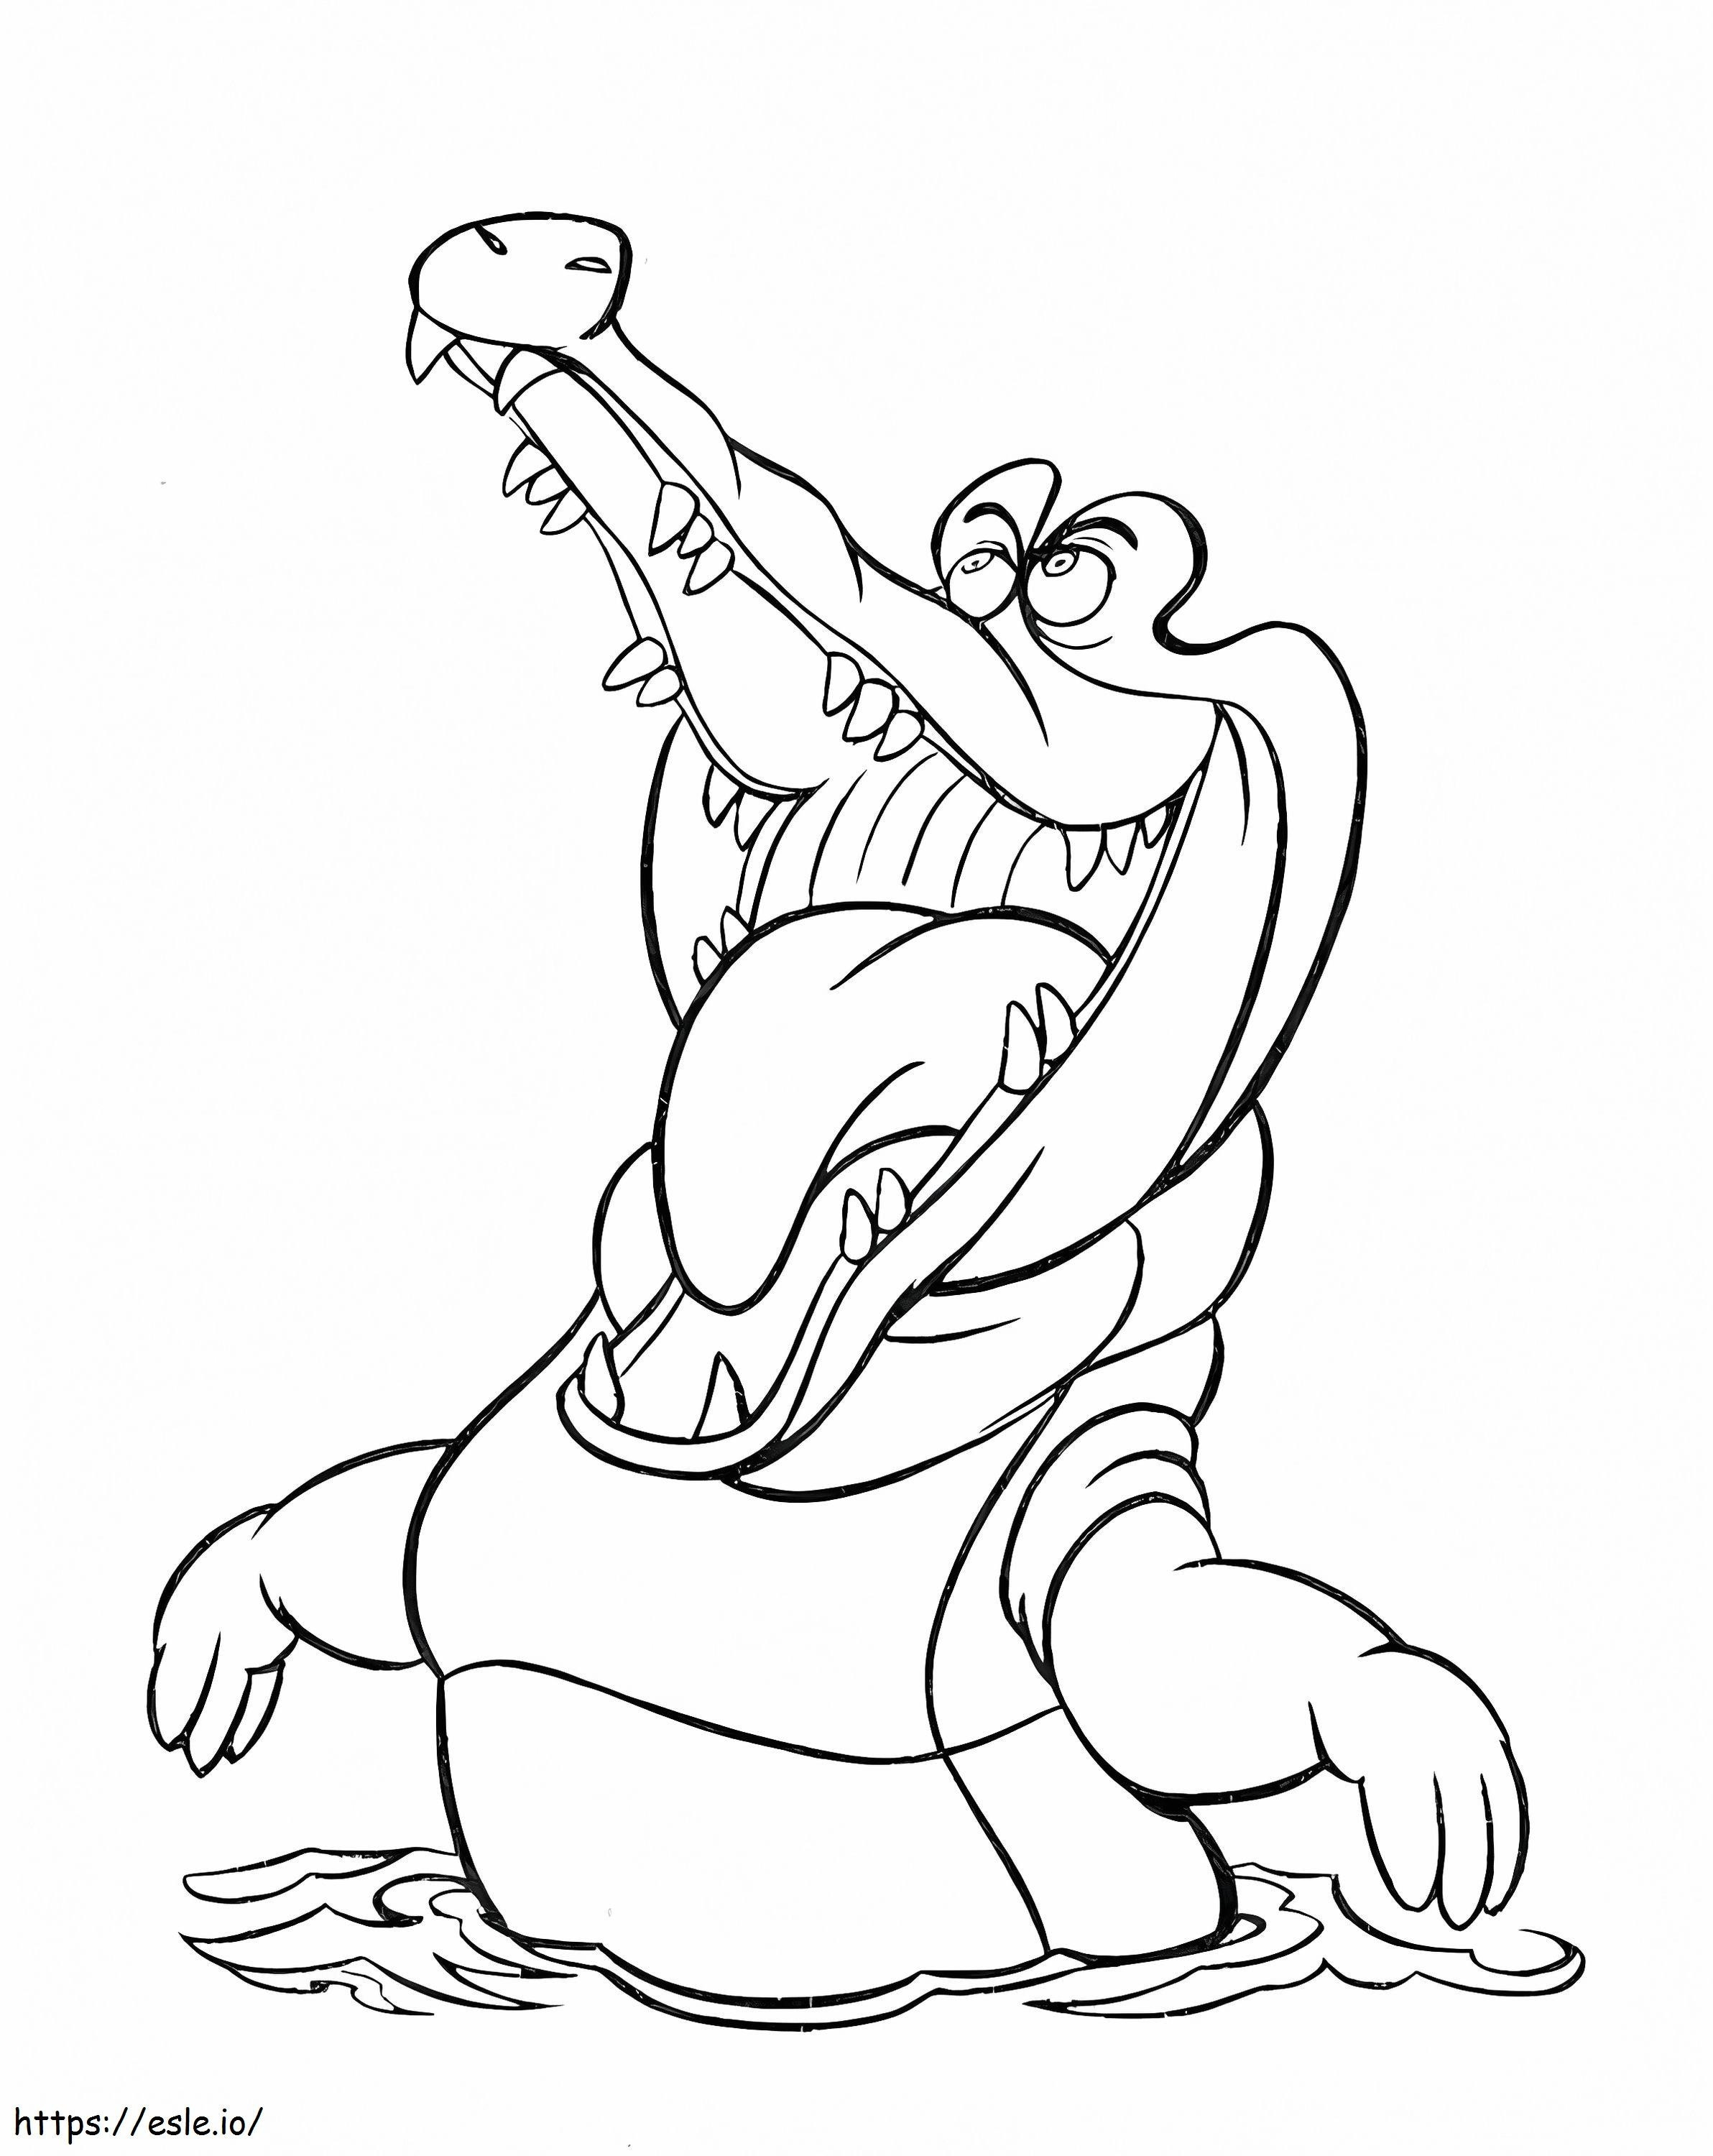 Funny Cartoon Crocodile coloring page